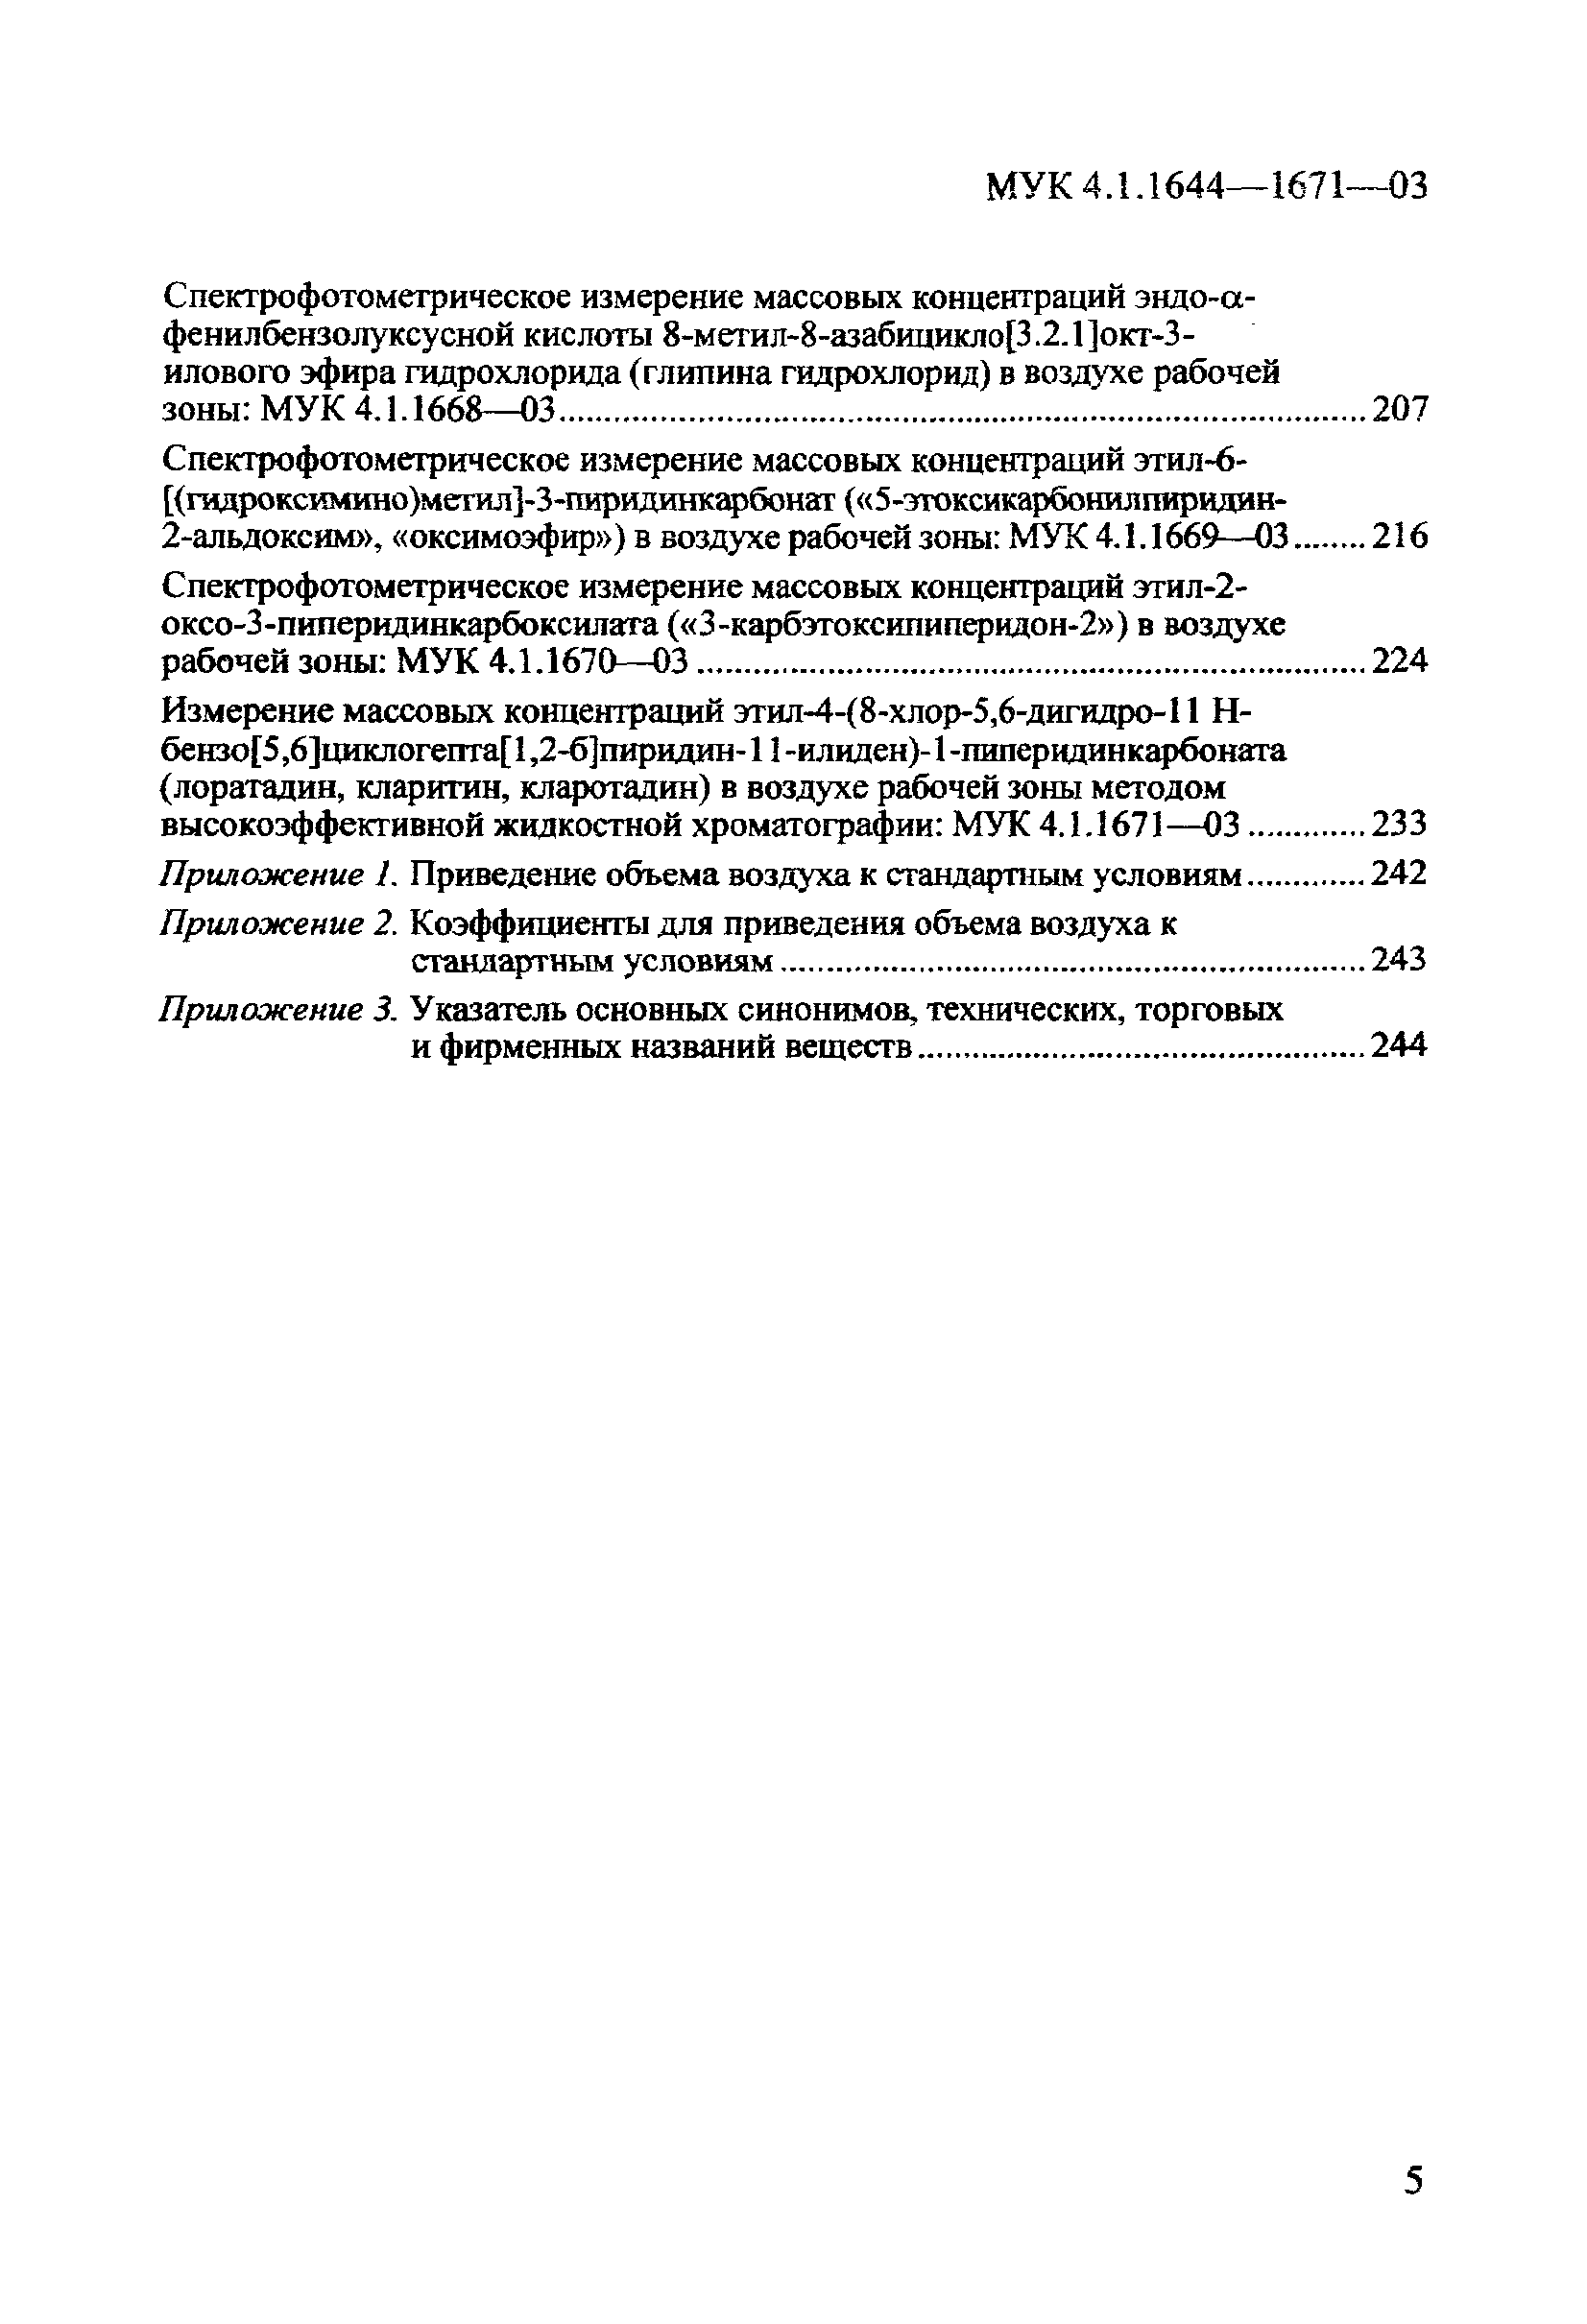 МУК 4.1.1667-03